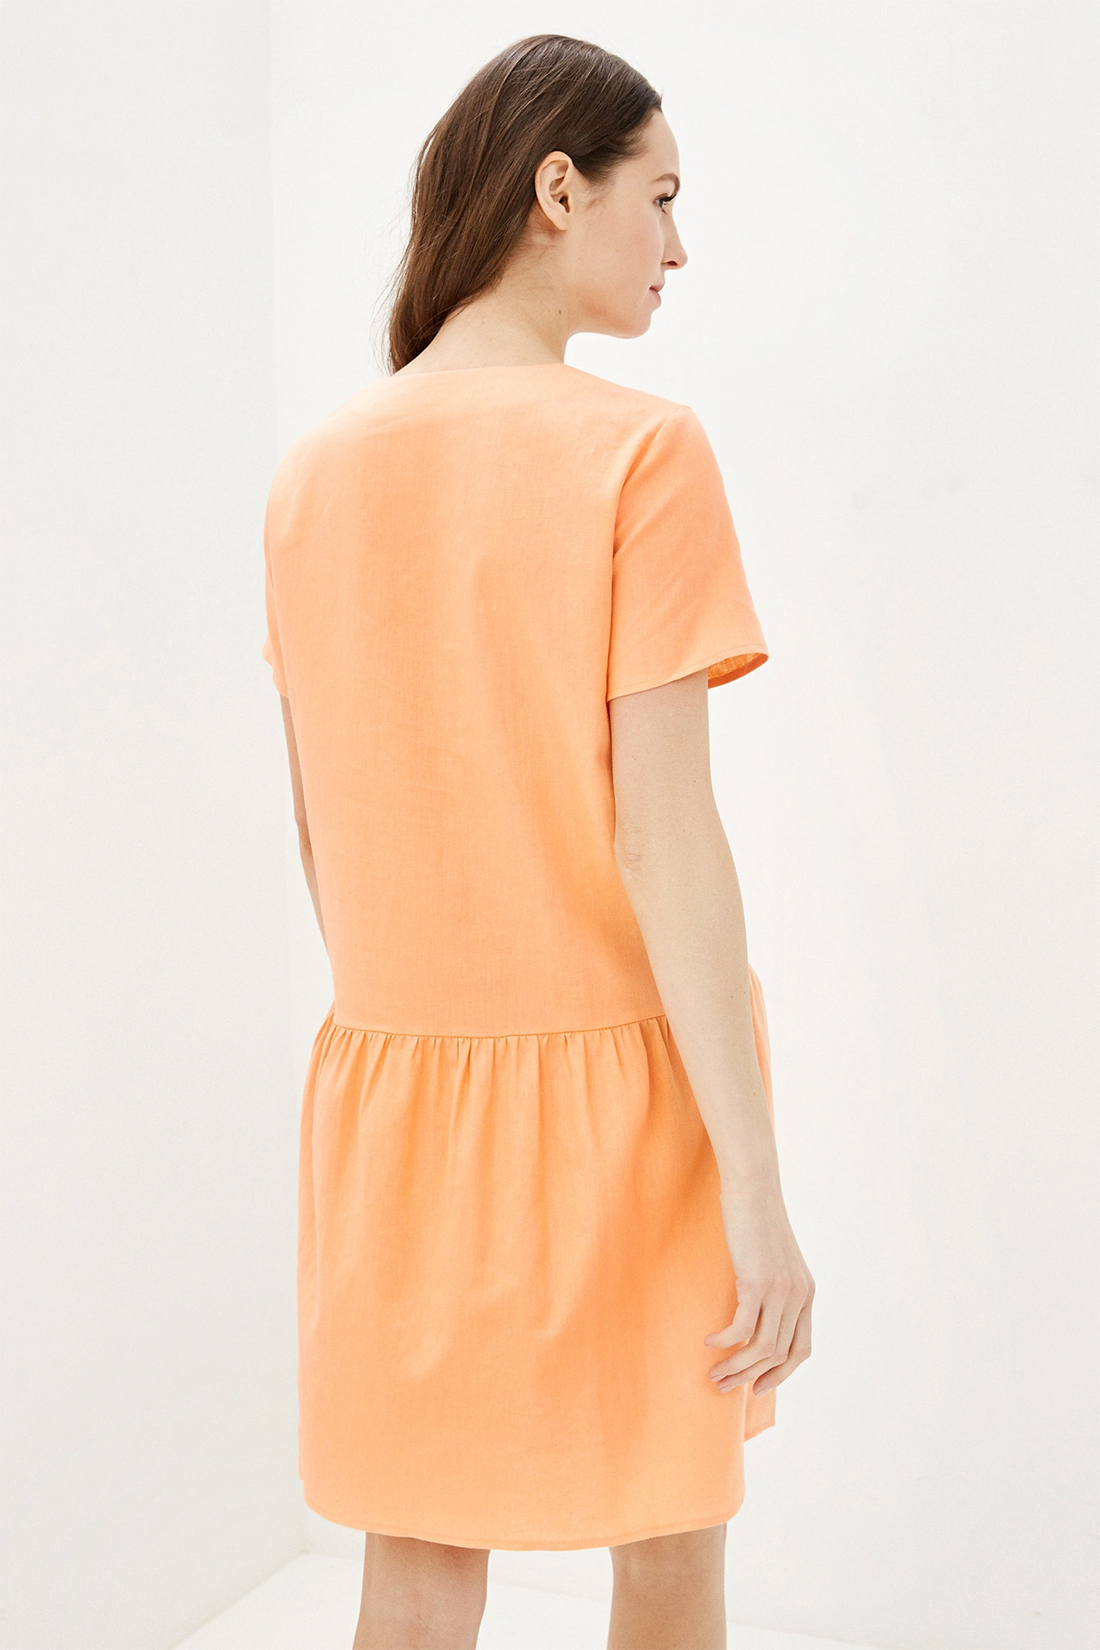 Платье (арт. baon B450054), размер XXL, цвет оранжевый Платье (арт. baon B450054) - фото 2